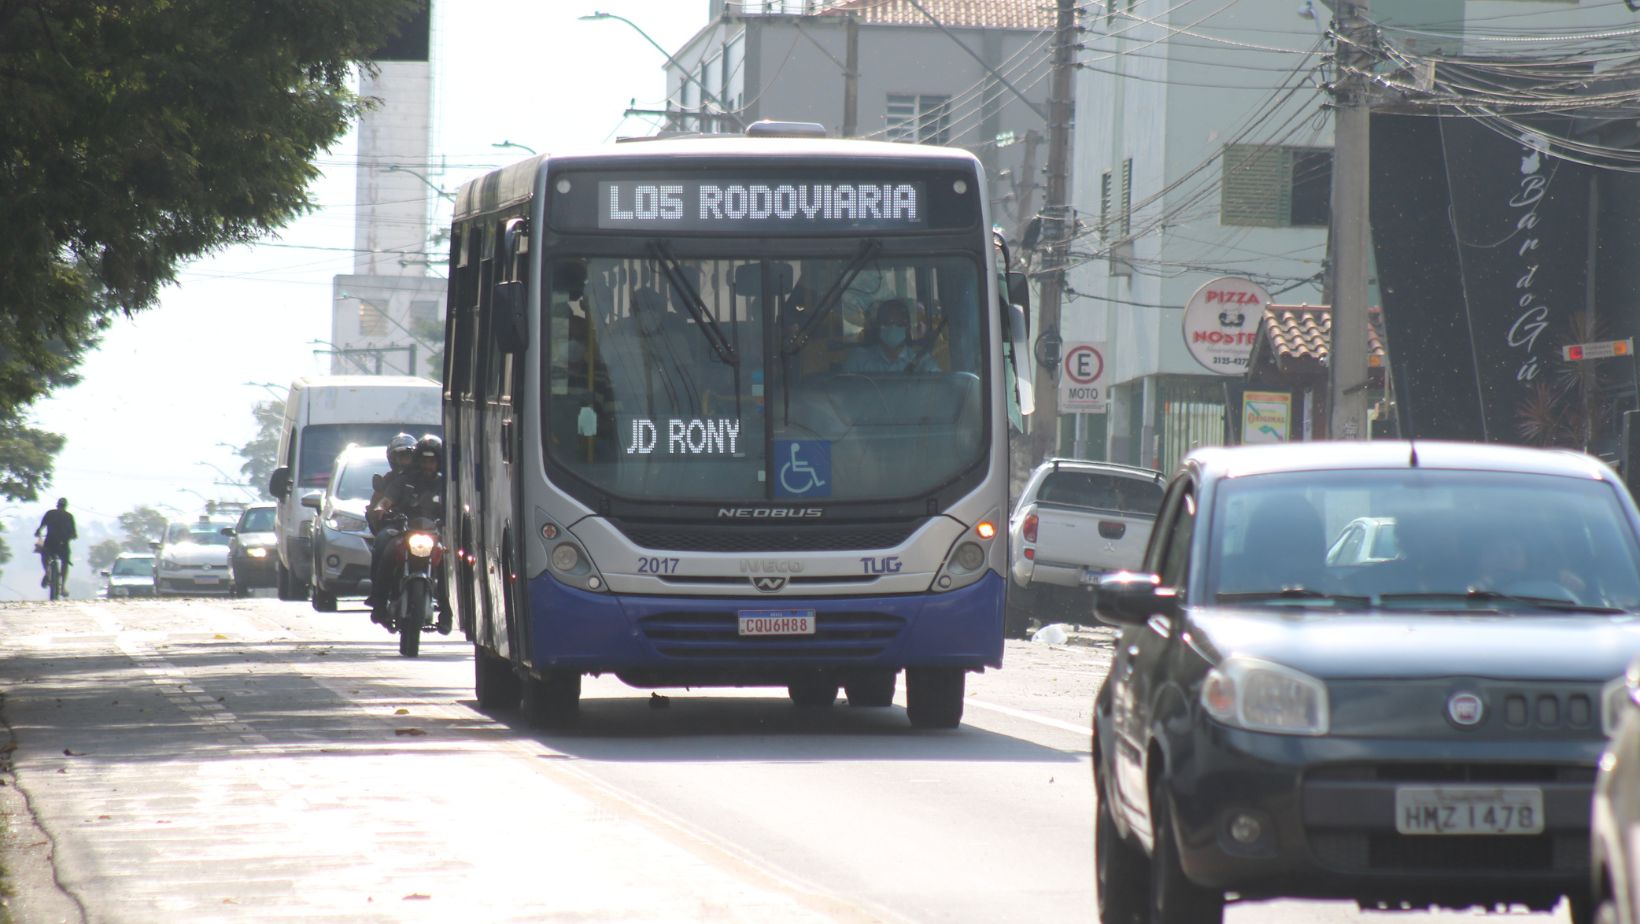 Câmara aprova subsídio para o transporte coletivo em Guaratinguetá